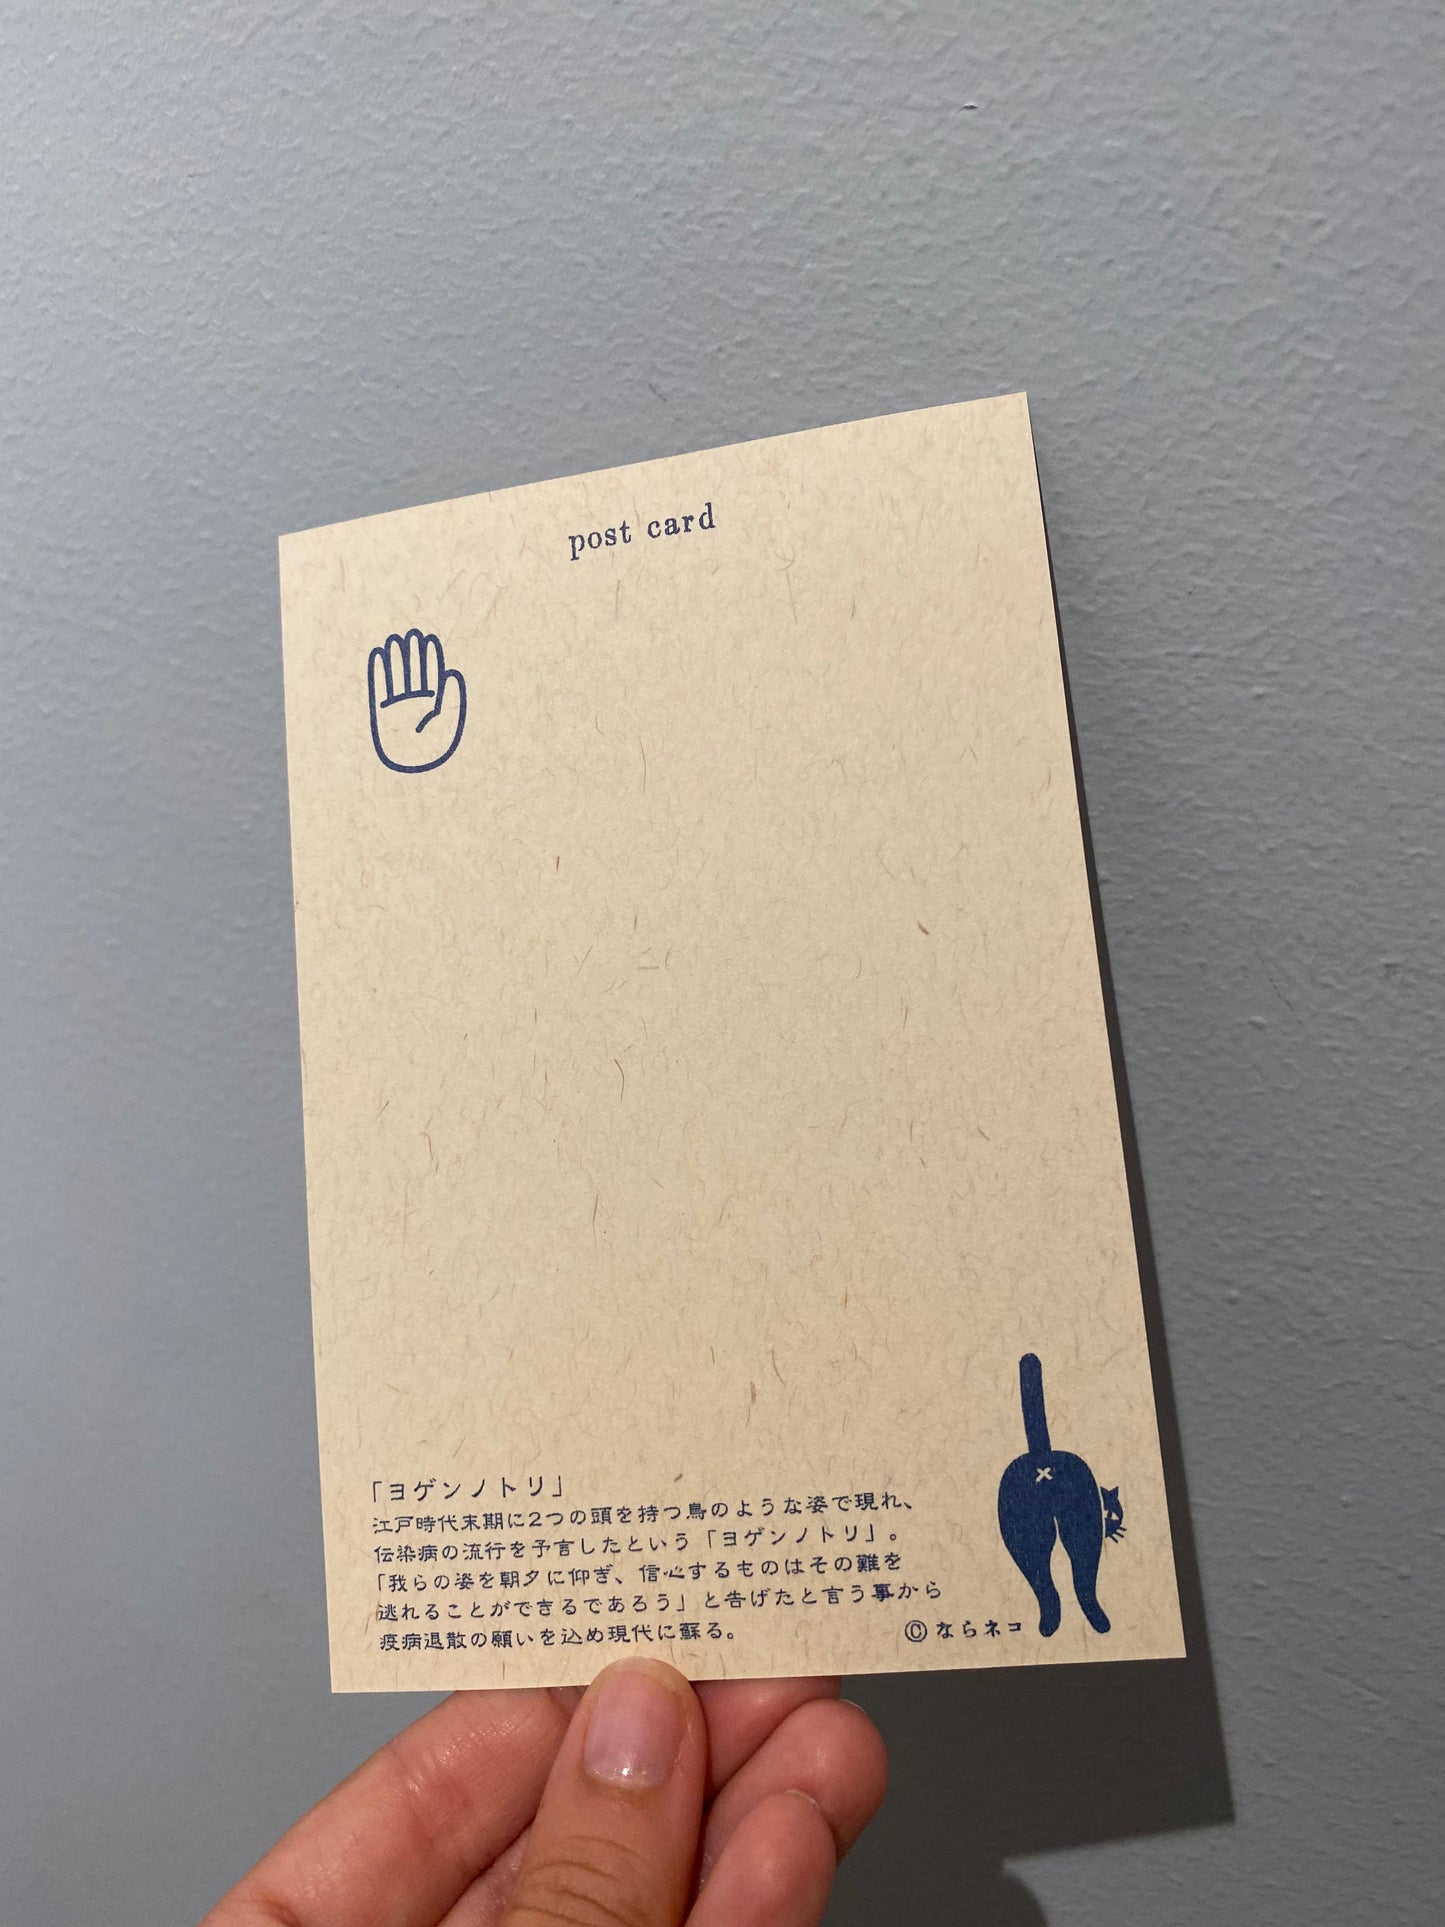 Postkort med japansk ‘safety monster’ og citater